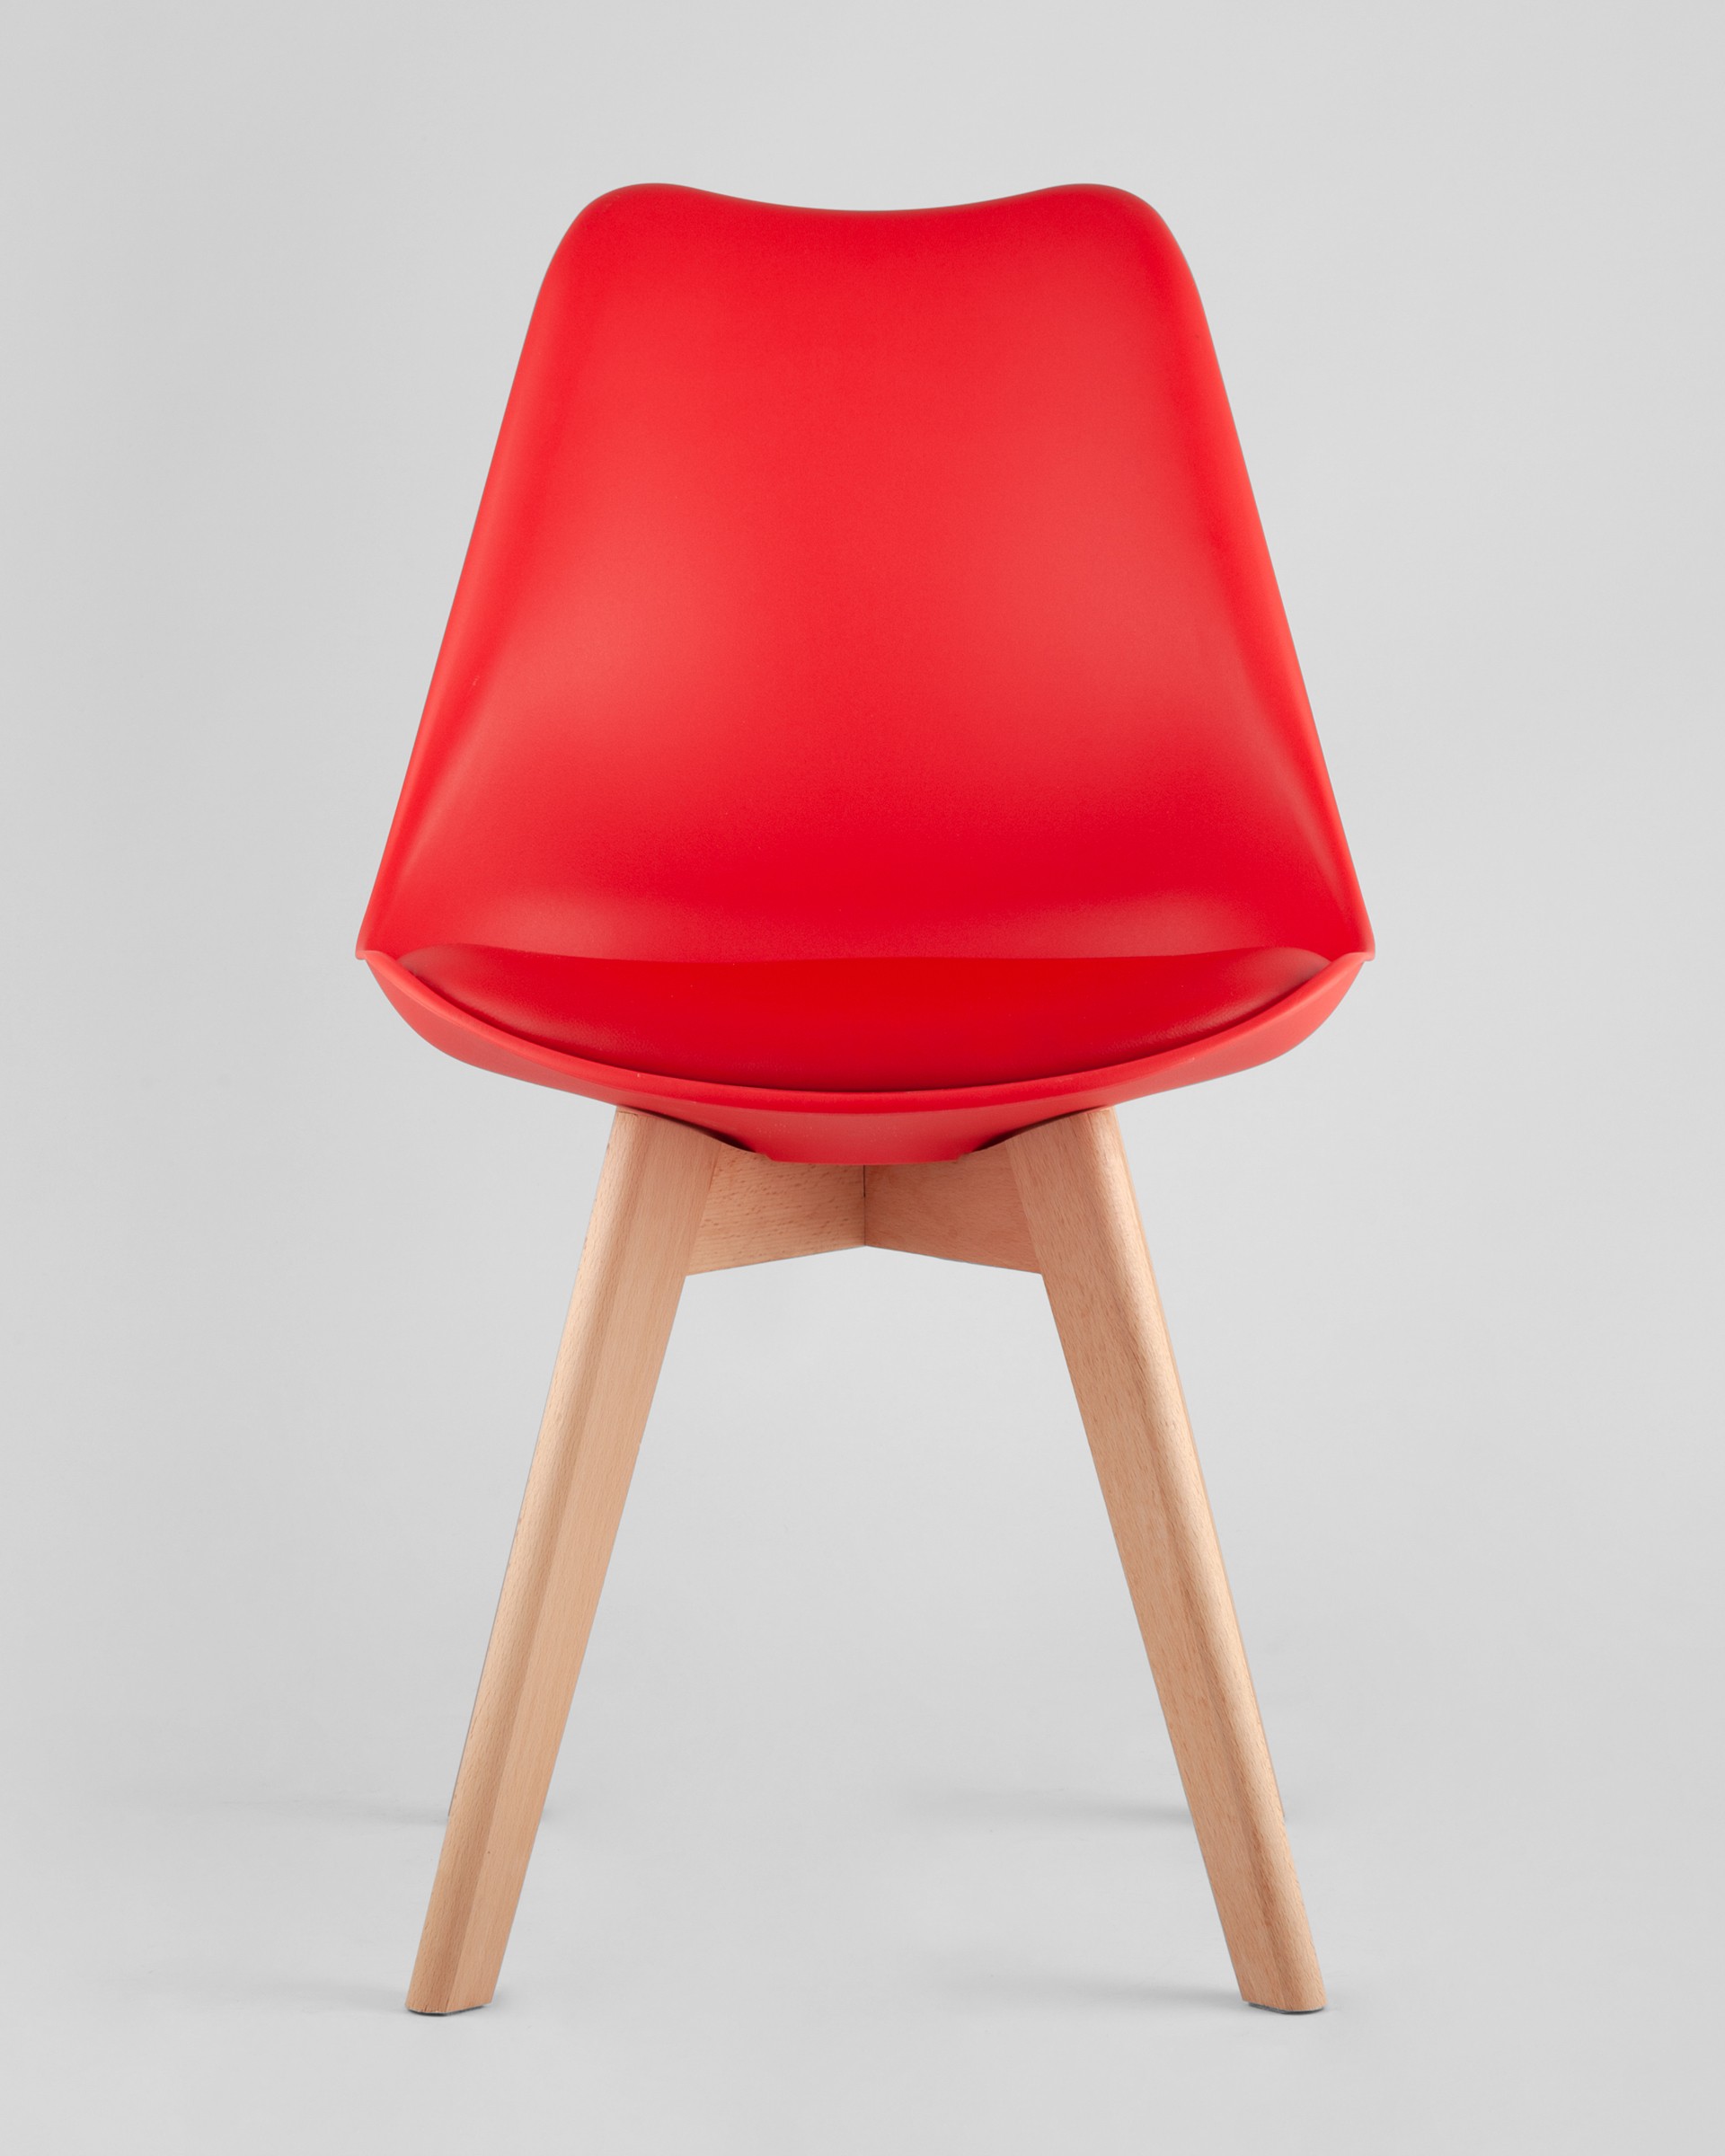 Стул Frankfurt красный, сиденье из сочетания пластика и экокожи, ножки деревянные